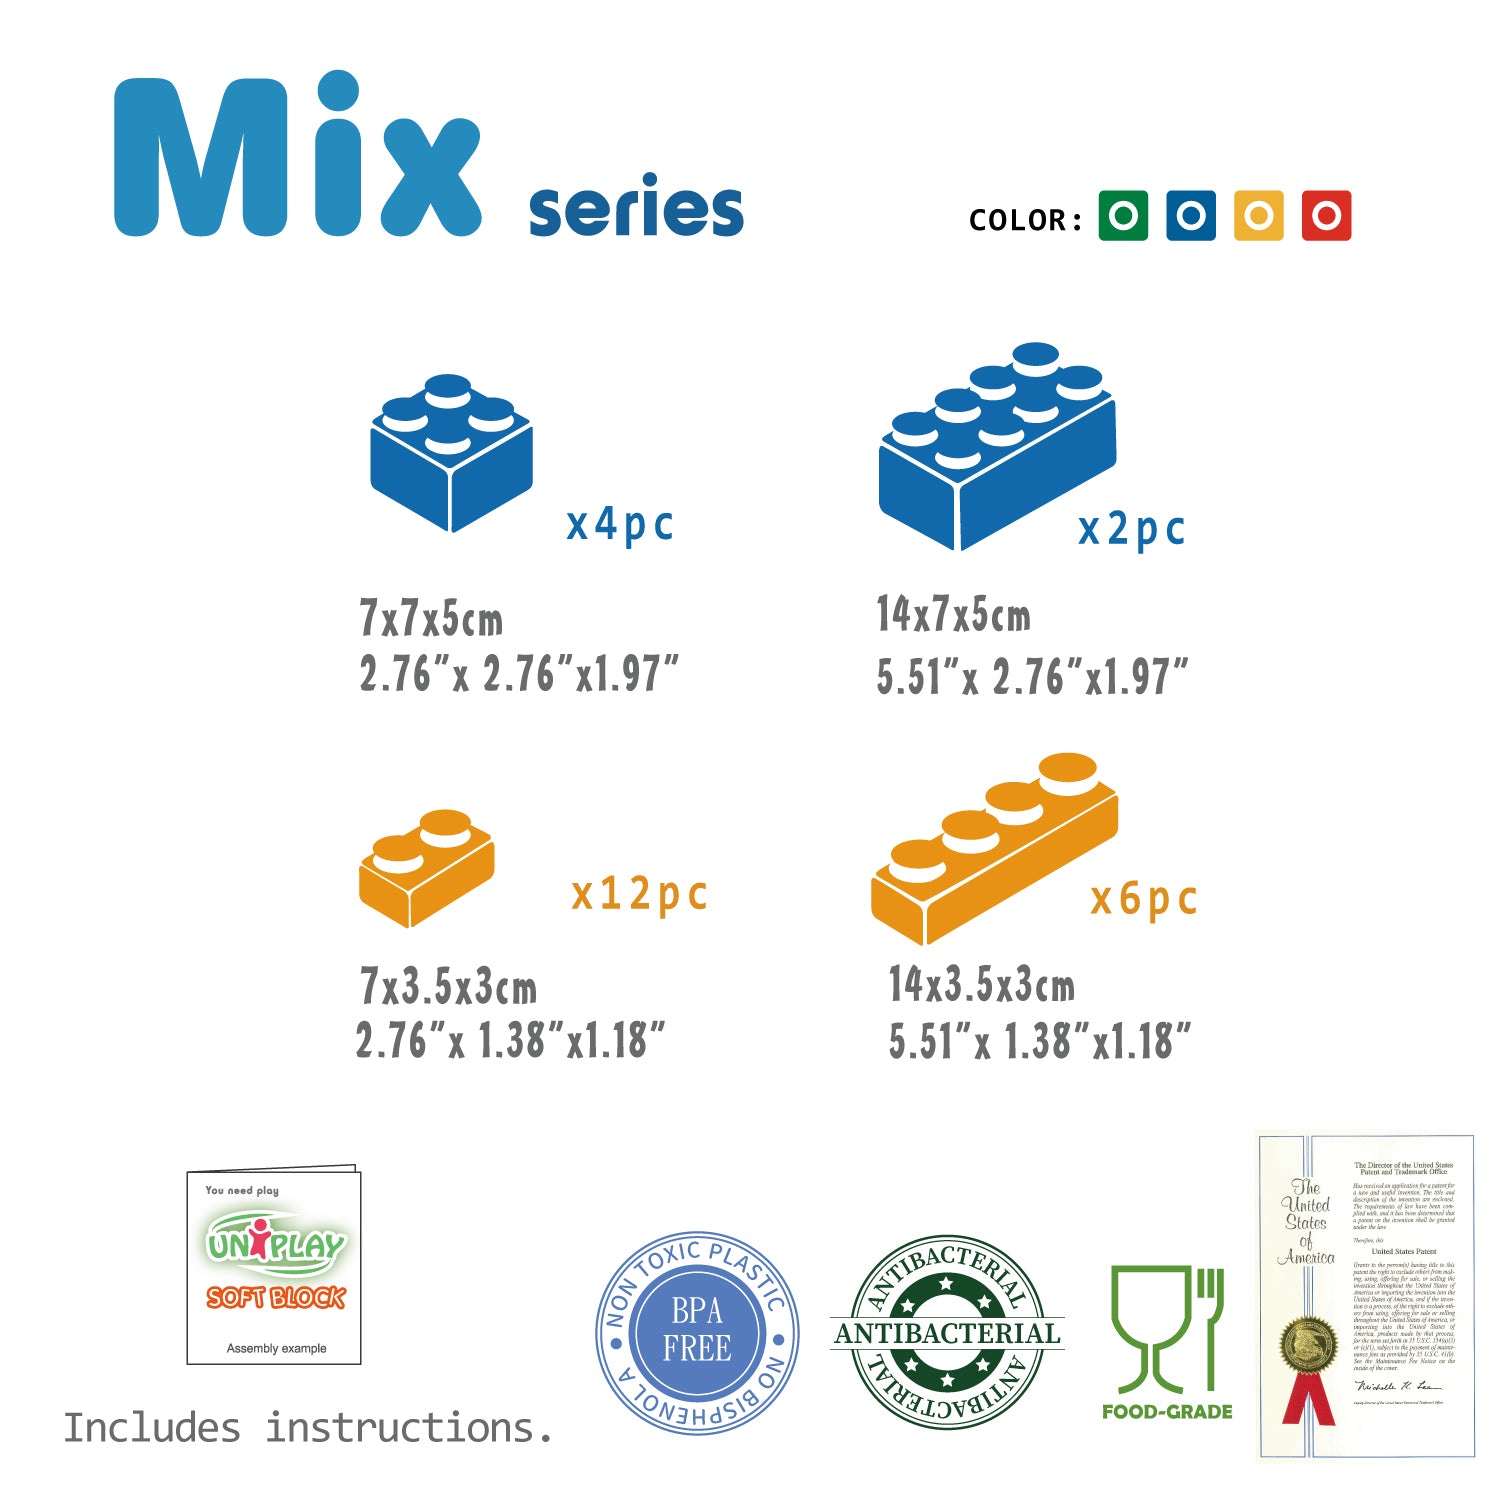 UNiPLAY Soft Building Blocks Mix Series 24pcs (#UN3024PR)